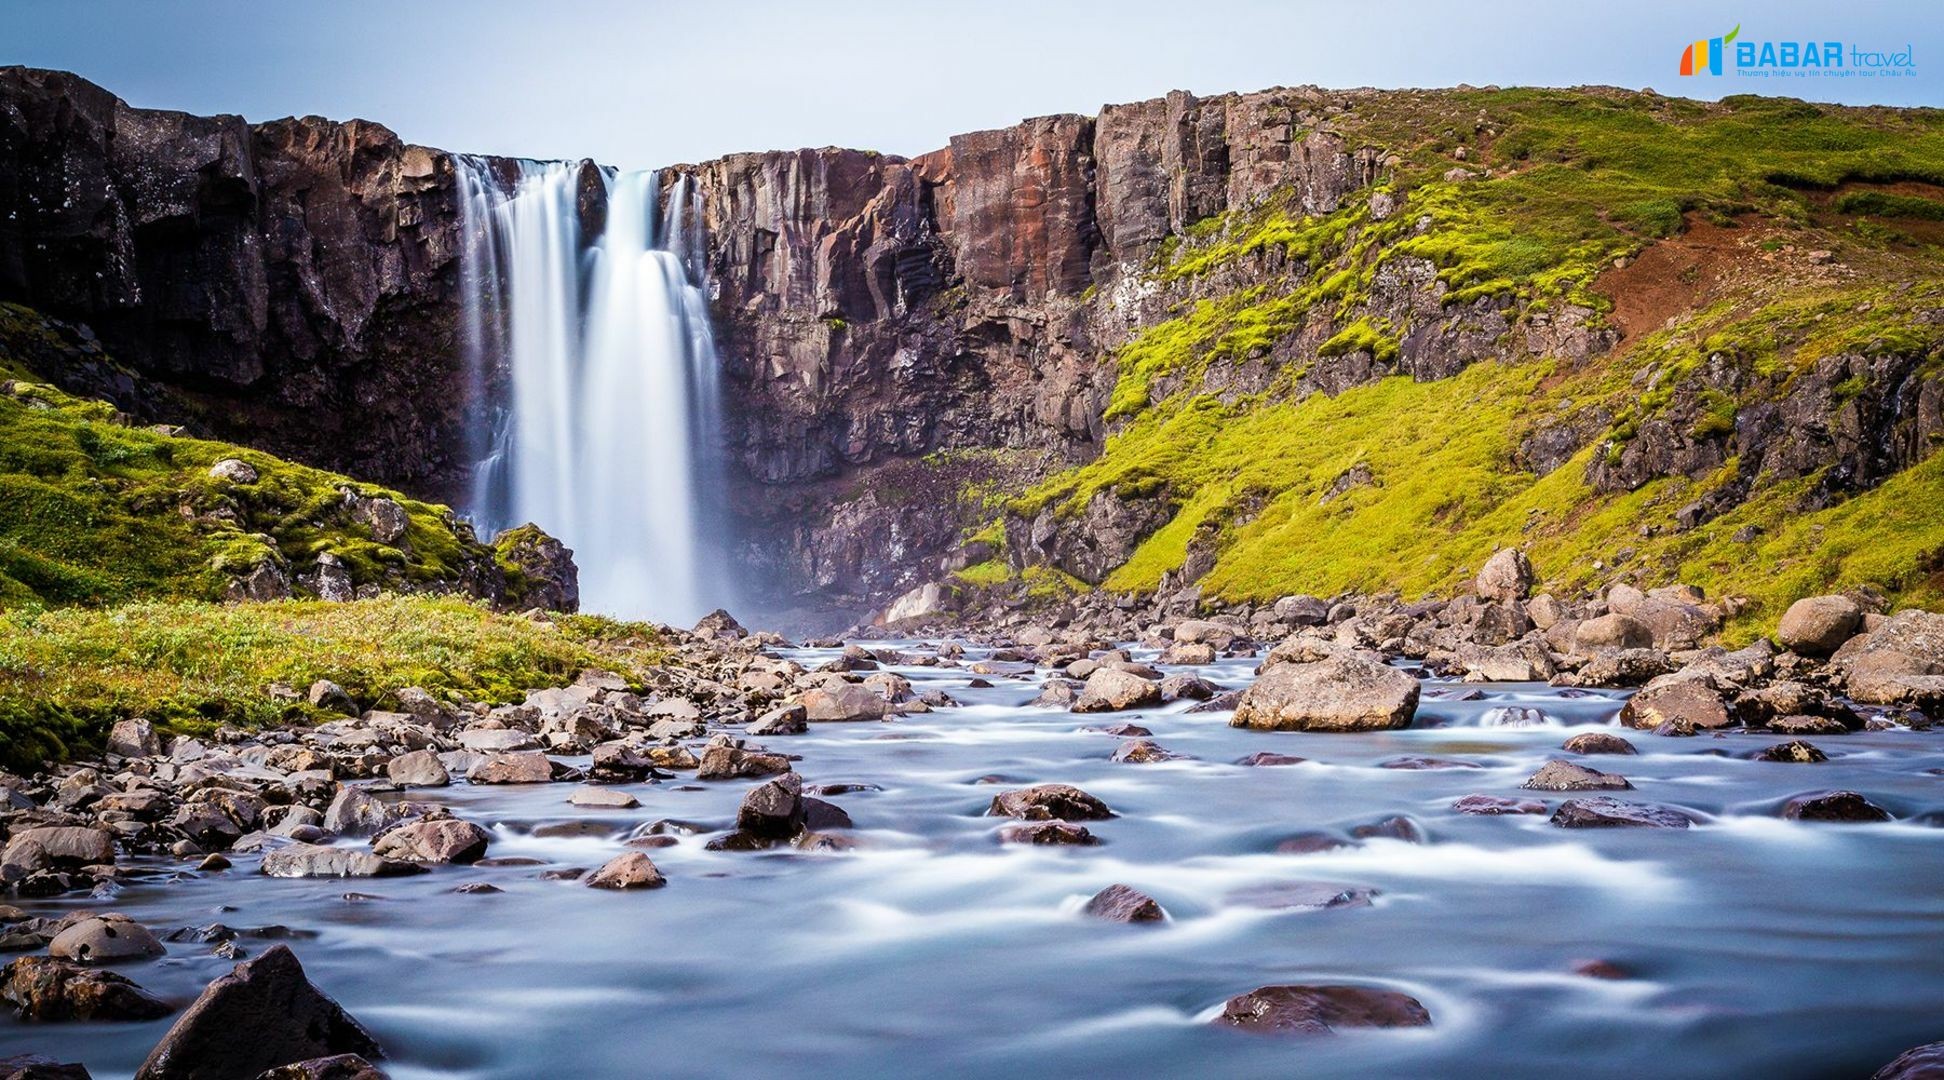 Du lịch Iceland: những địa điểm bạn không thể bỏ lỡ